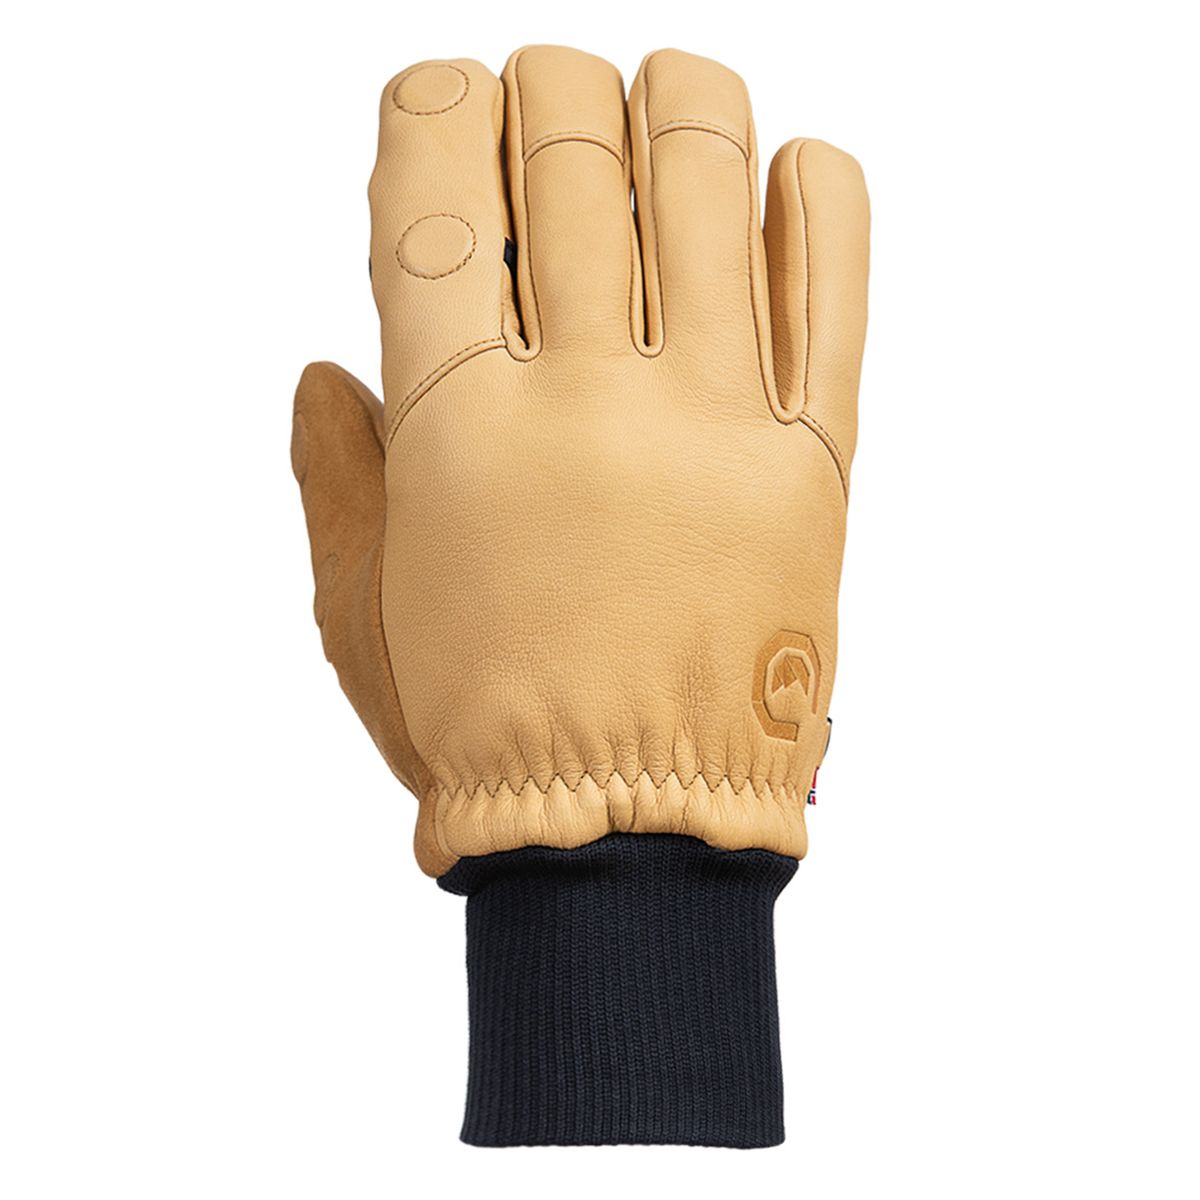 Vallerret Hatchet Leather Glove Natural, Leder-Fotohandschuhe L - Hellbraun